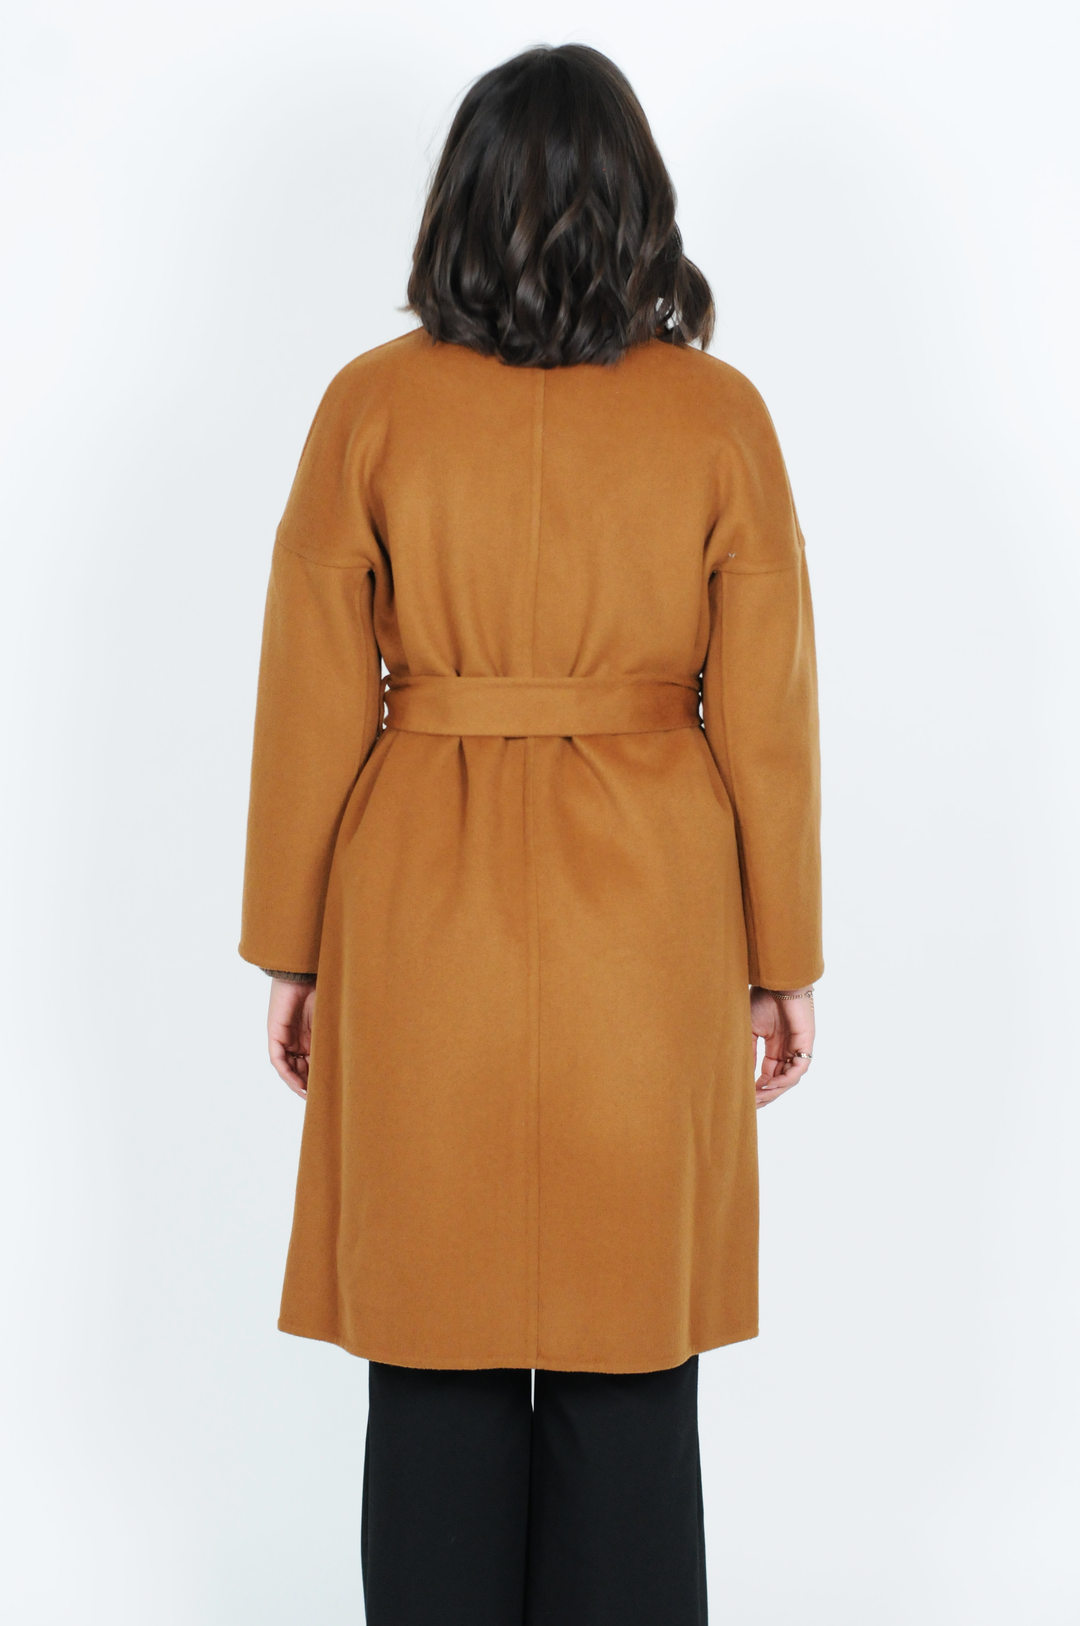 Harlow, 105 cm. - Collar - Wool coat - Women - Cognac